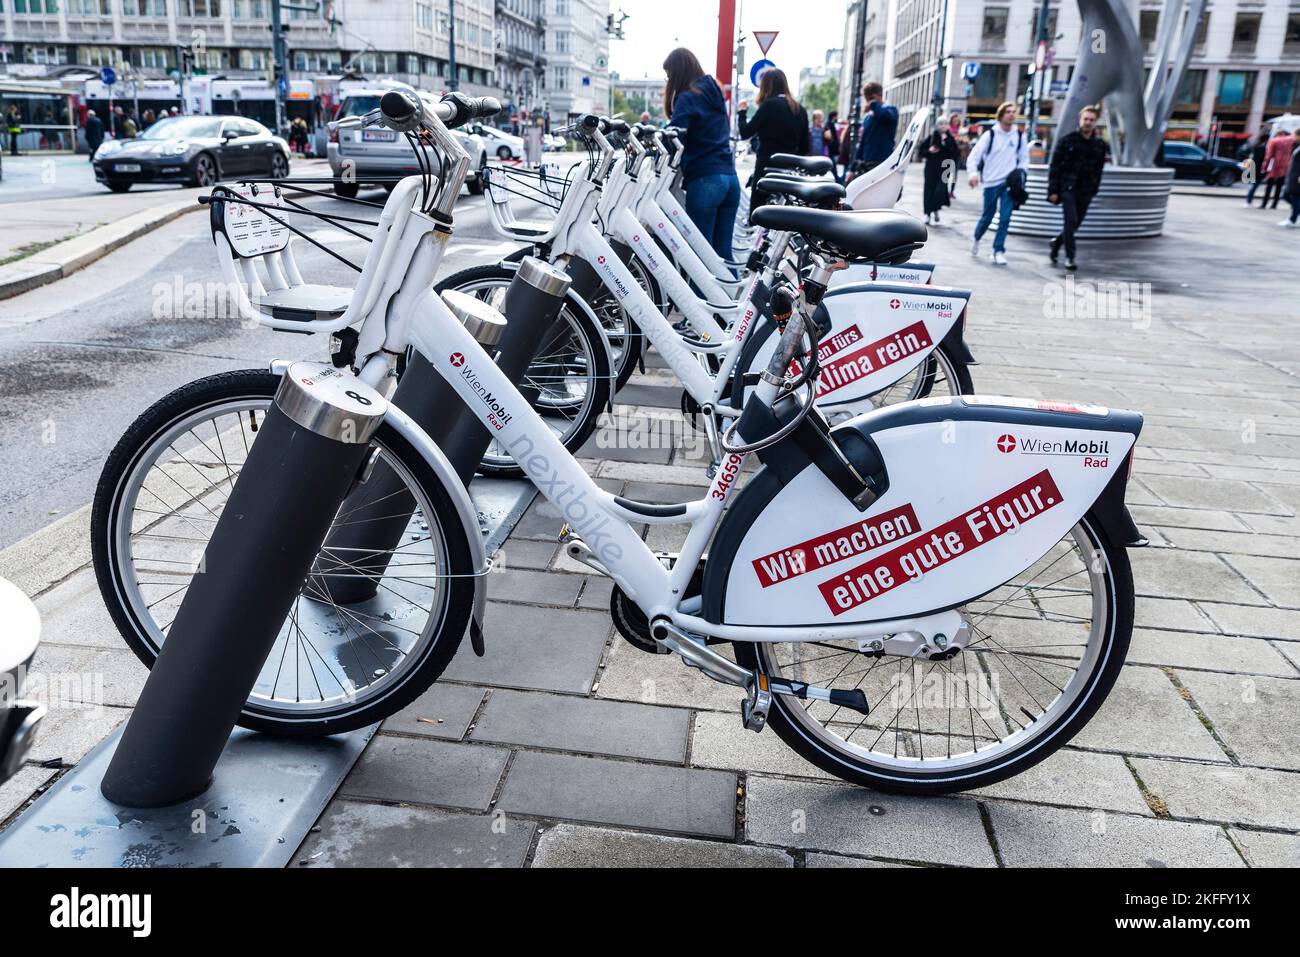 Vienna, Austria - 14 ottobre 2022: Una fila di biciclette elettriche a noleggio con pubblicità da Wien Mobil carica le batterie nei loro supporti docking con pe Foto Stock